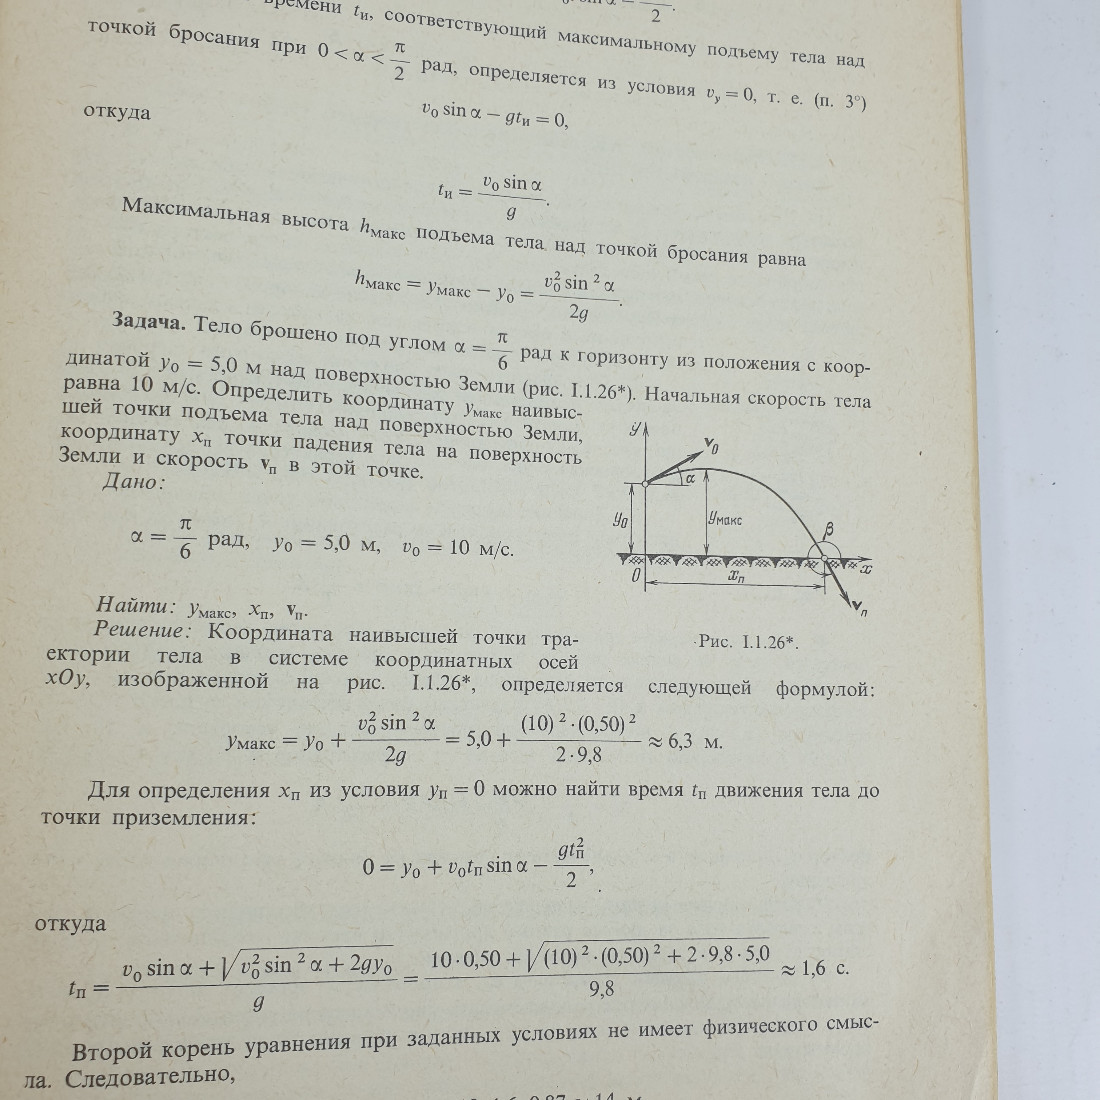 Б.М. Яворский, Ю.А. Селезнёв "Справочное руководство по физике". Картинка 8